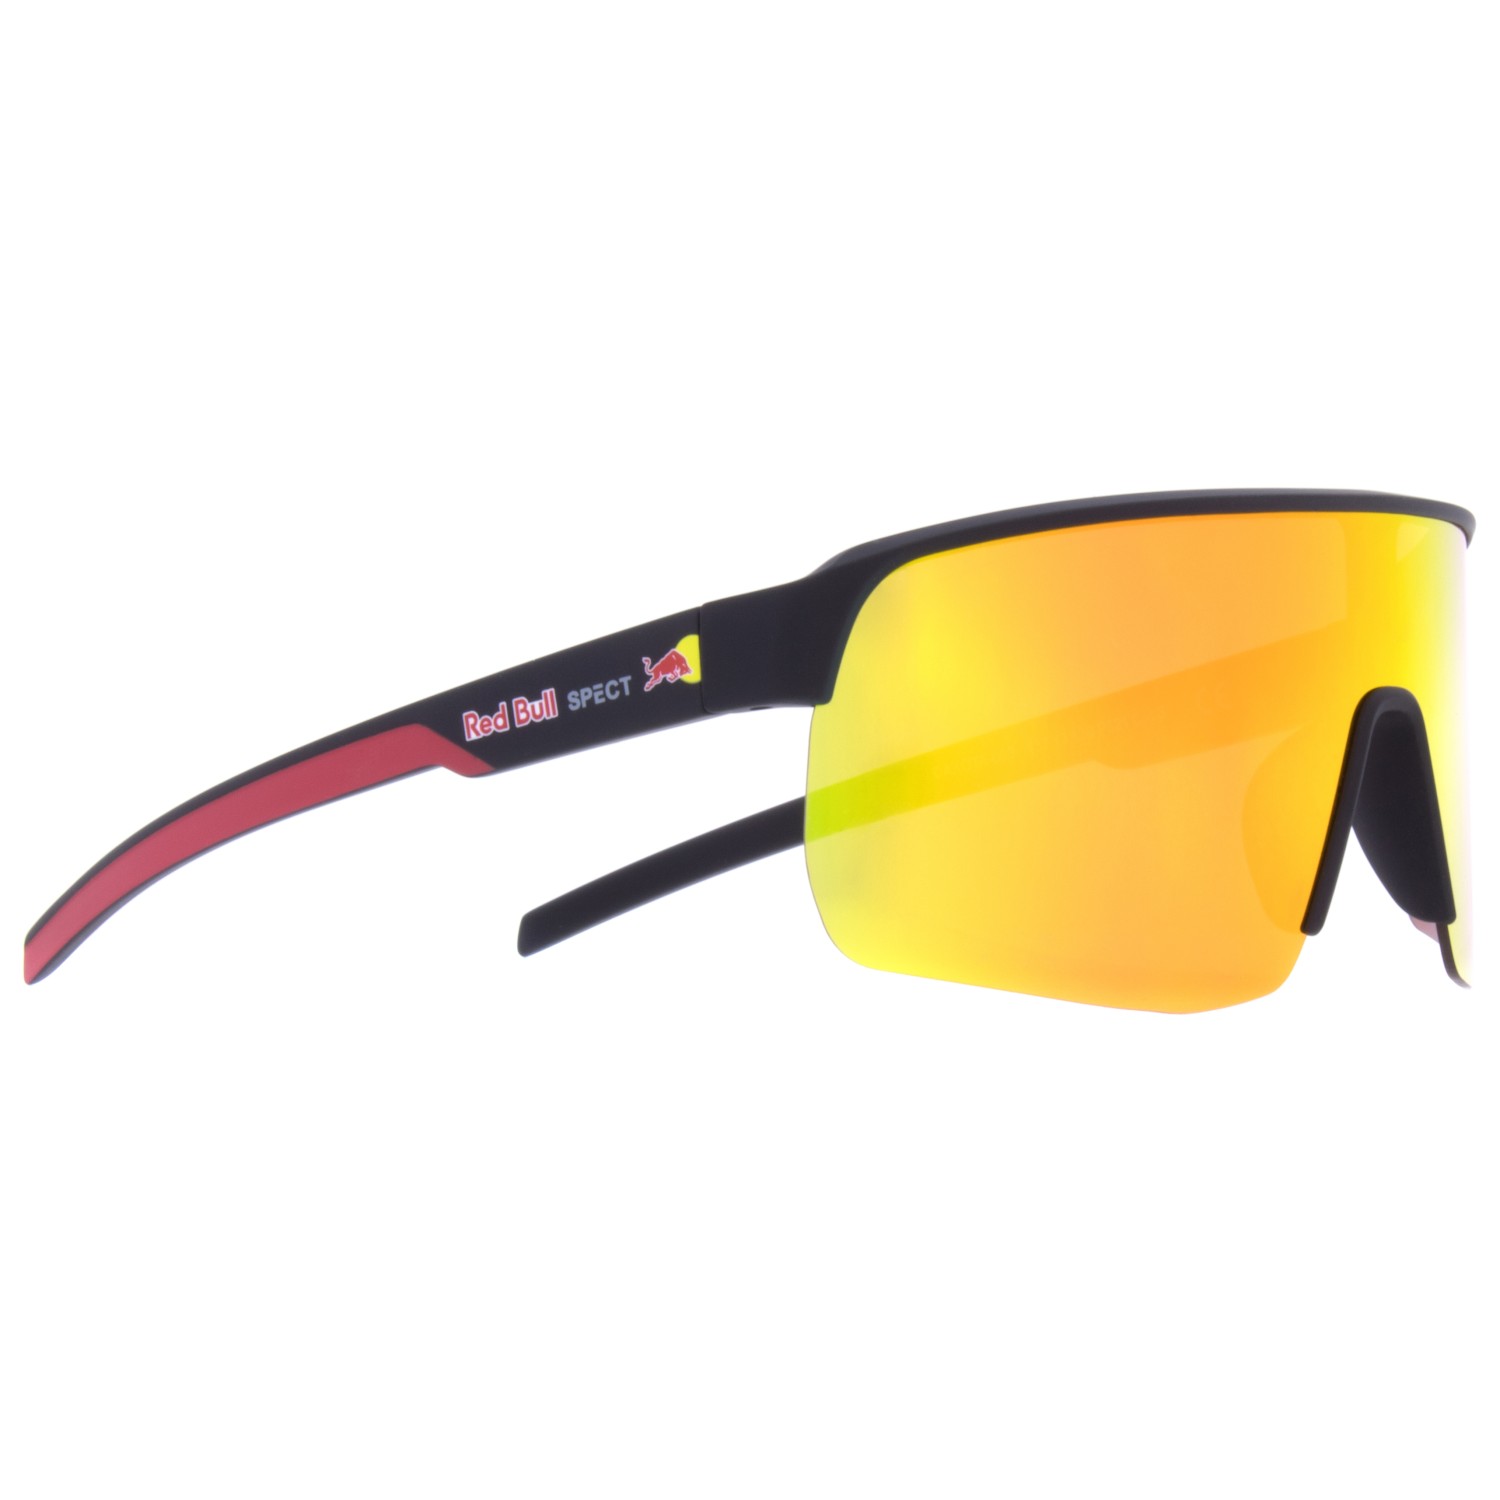 Велосипедные очки Red Bull Dakota Cat 3 (VLT 16%), черный очки truespin leon red